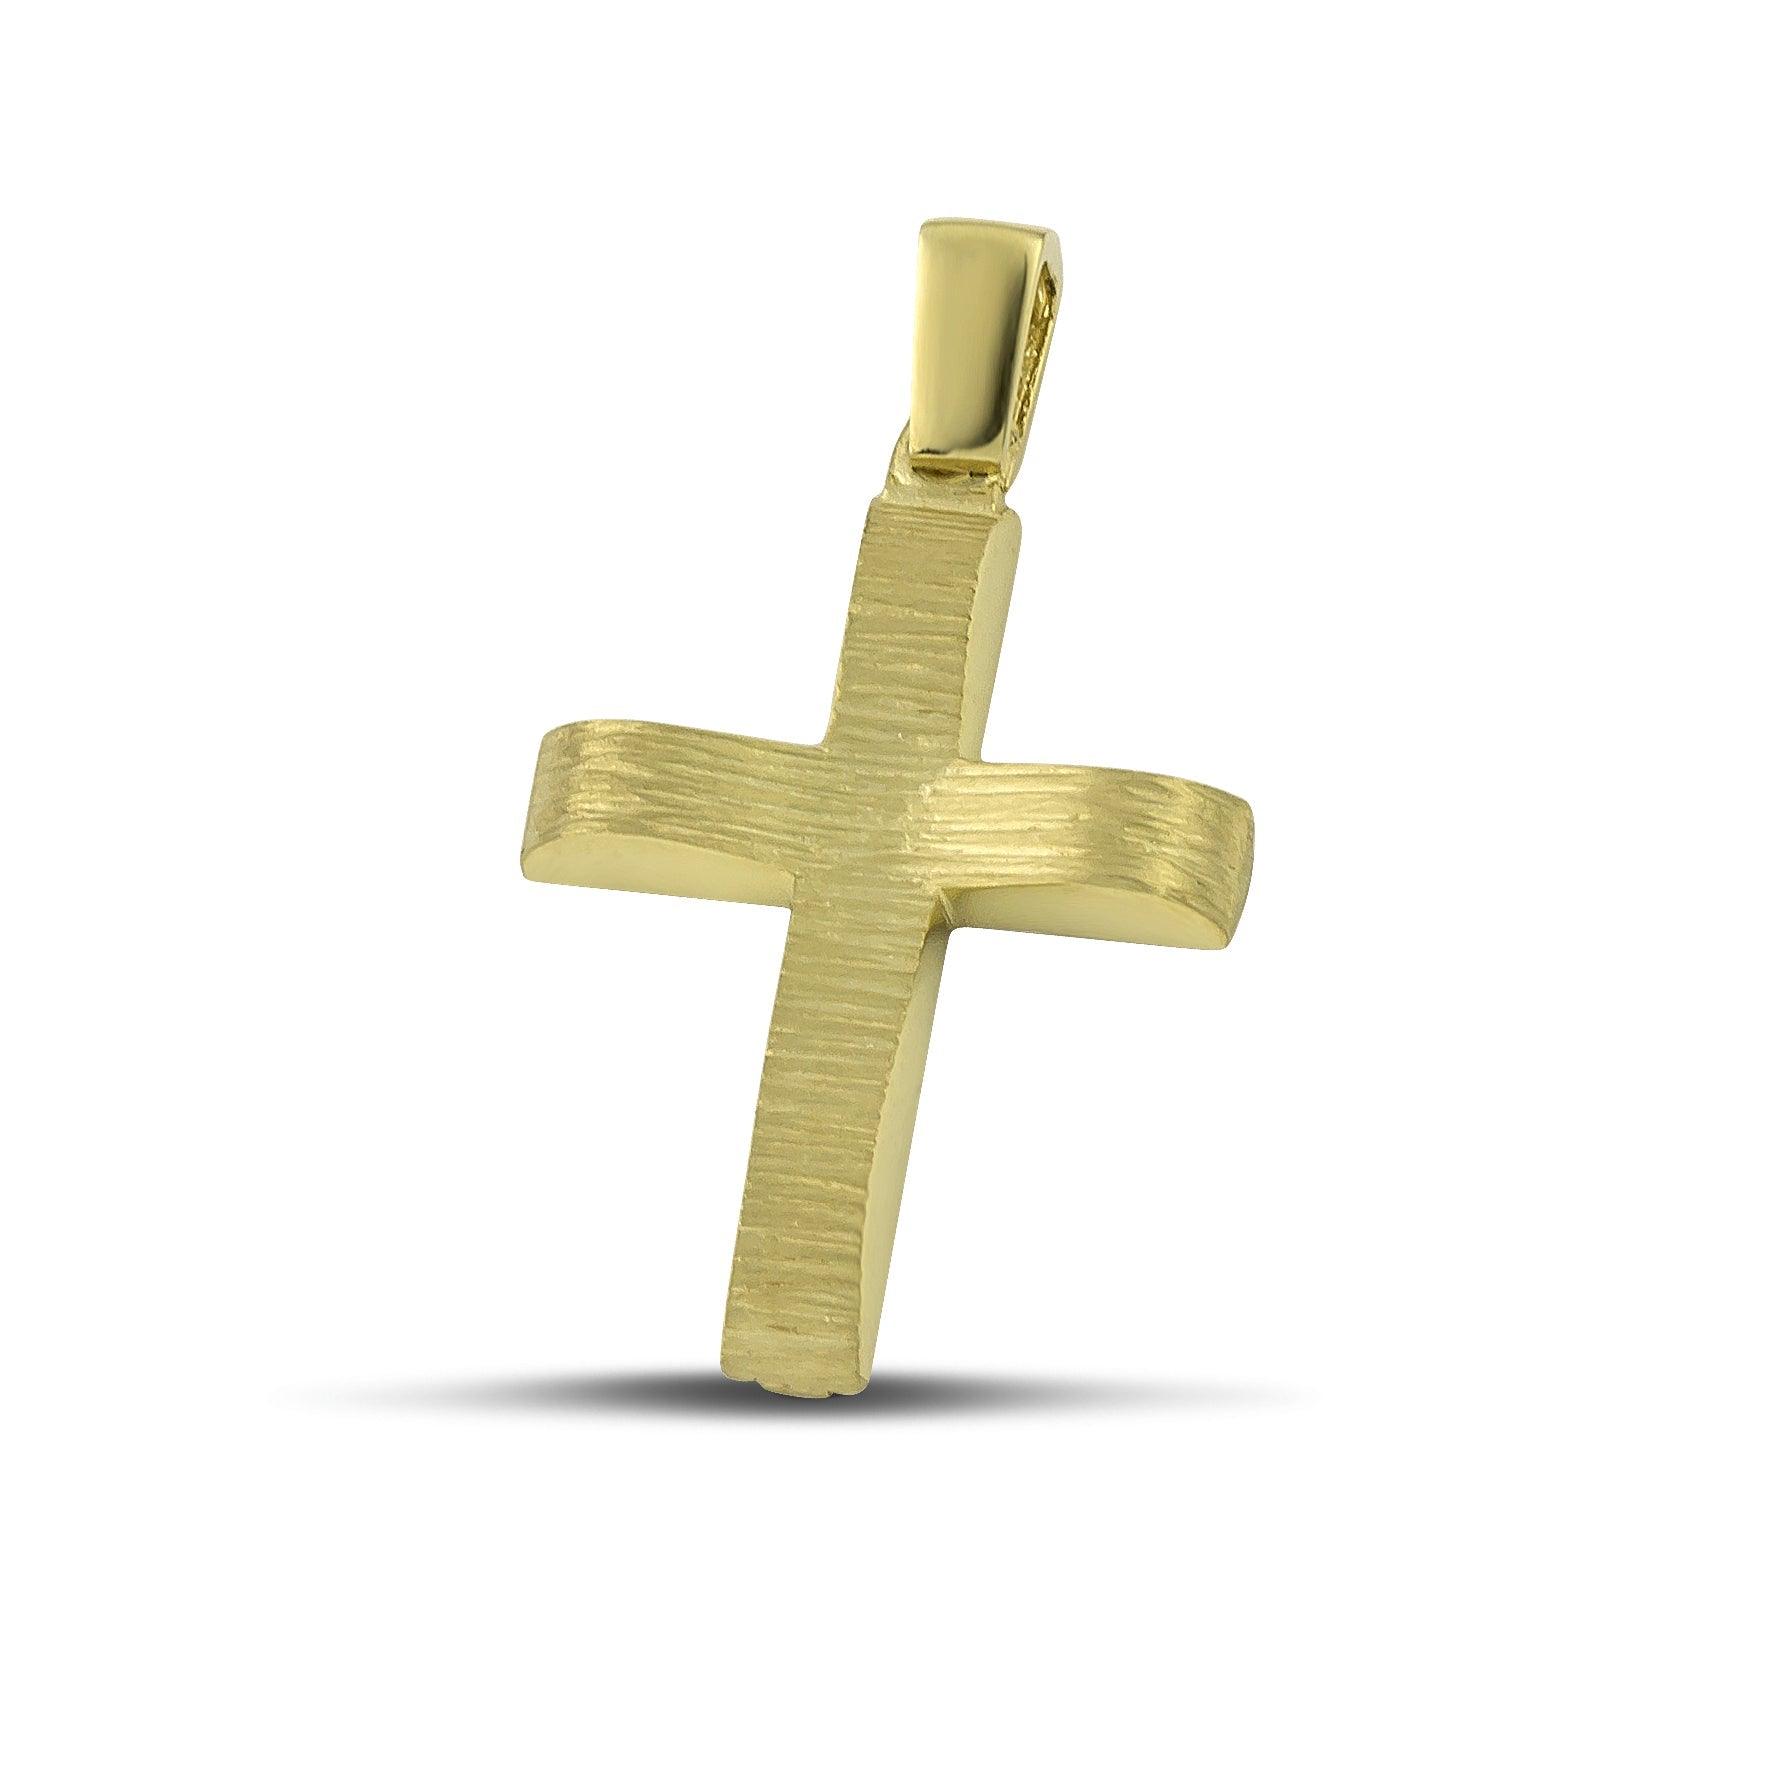 Μοντέρνος βαπτιστικός σταυρός χρυσός Κ14 για αγόρι, διπλής όψης, σαγρέ. 